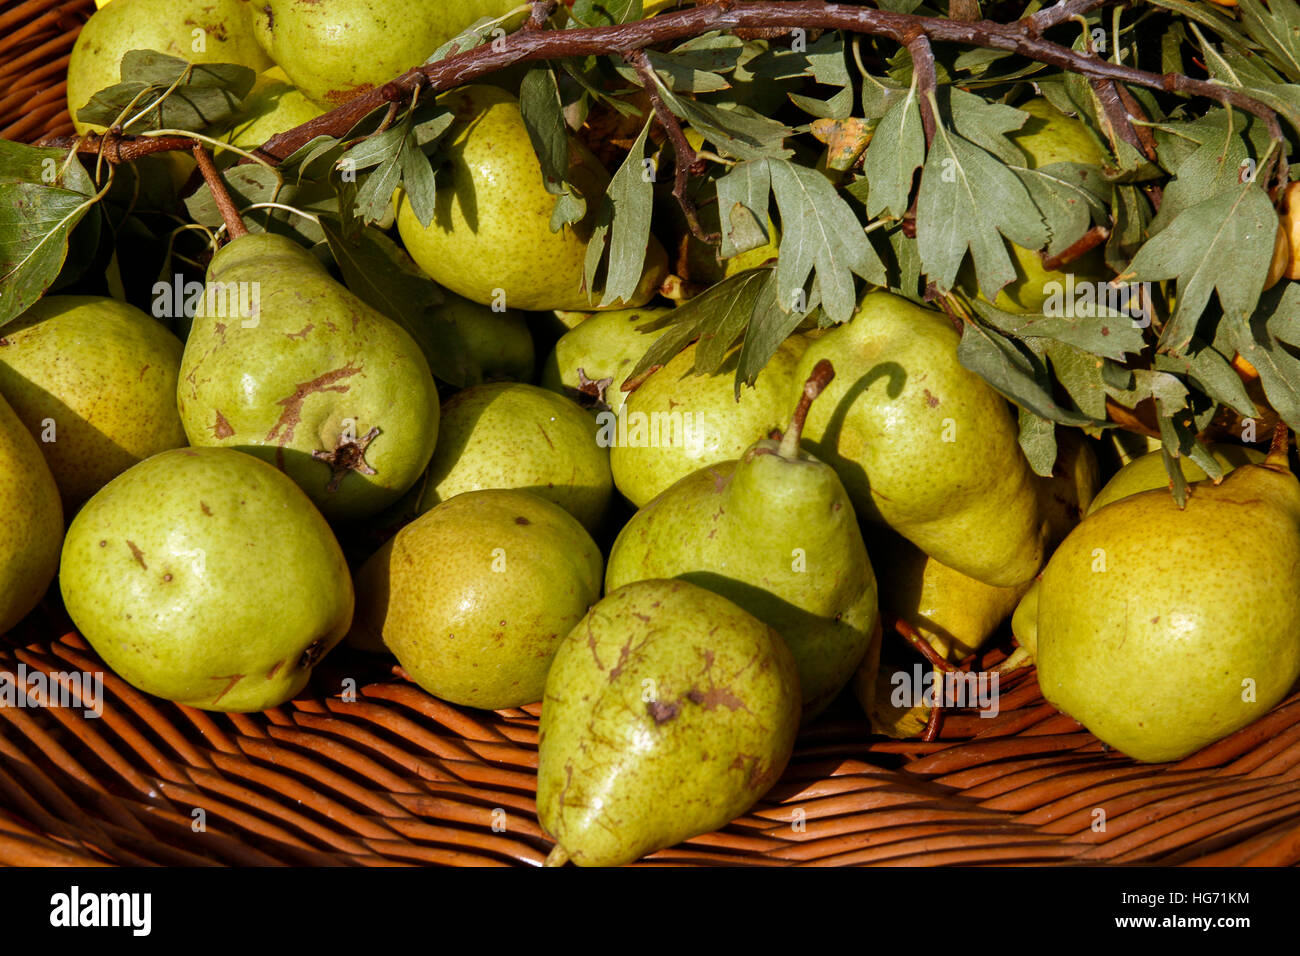 Italien Casola Valsenio "Festa dei Frutti Dimenticati" Obst Konserven auf einem Stall Birne Scipione angezeigt Stockfoto